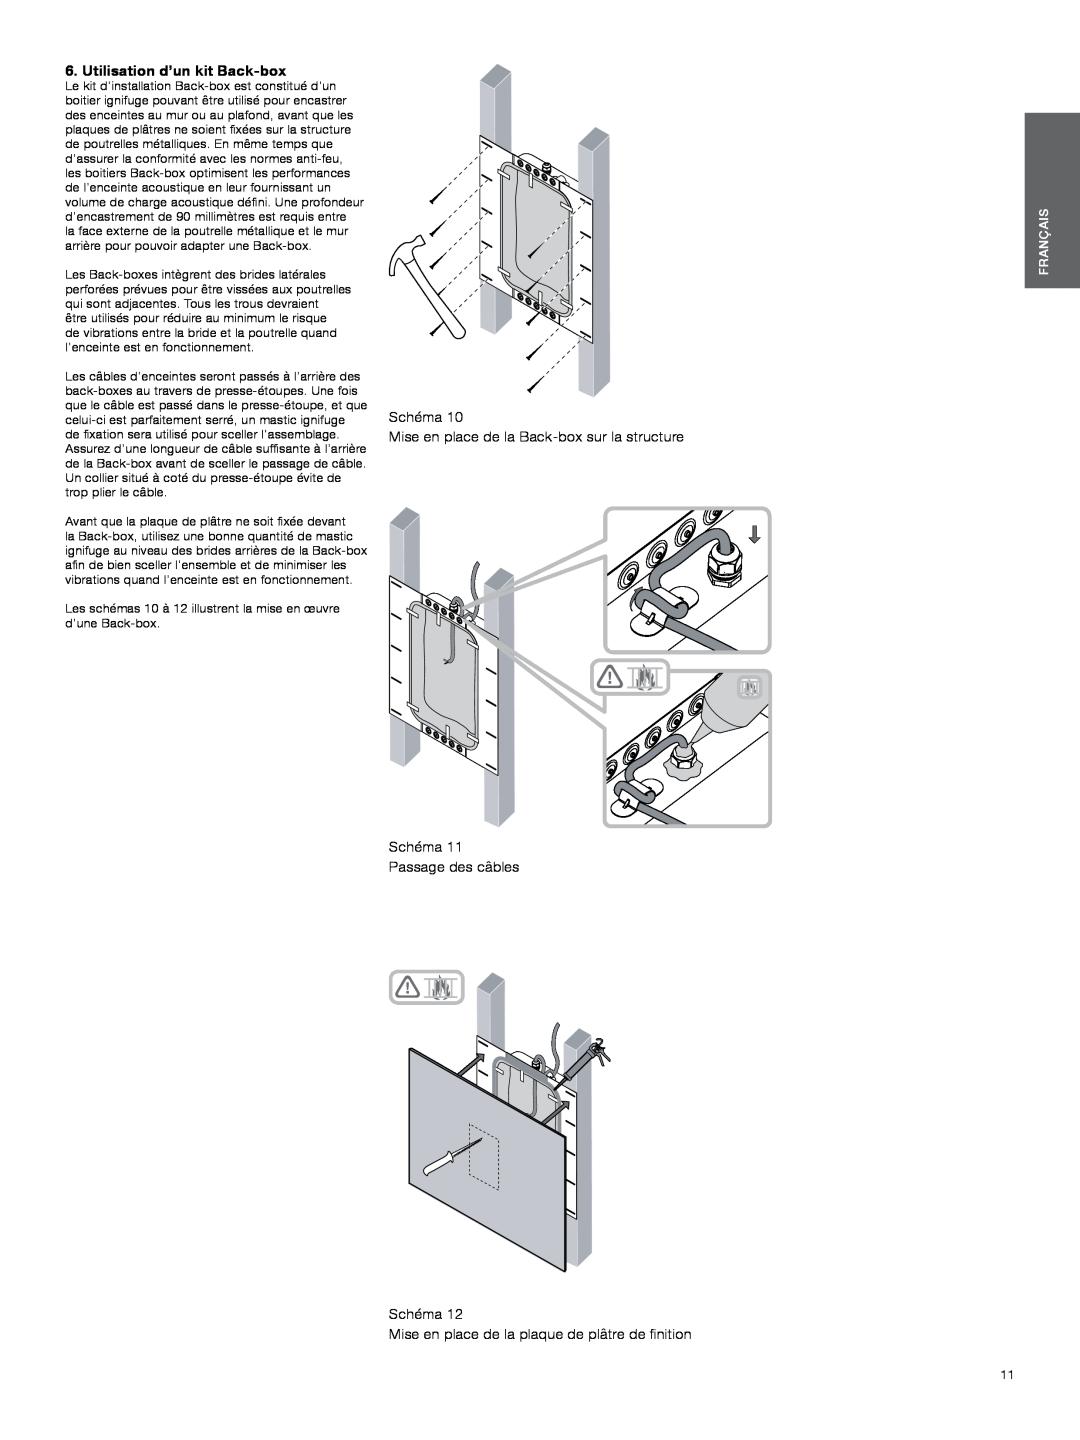 Bowers & Wilkins CWM3 manual Utilisation d’un kit Back-box, Schéma, Mise en place de la Back-boxsur la structure, Français 